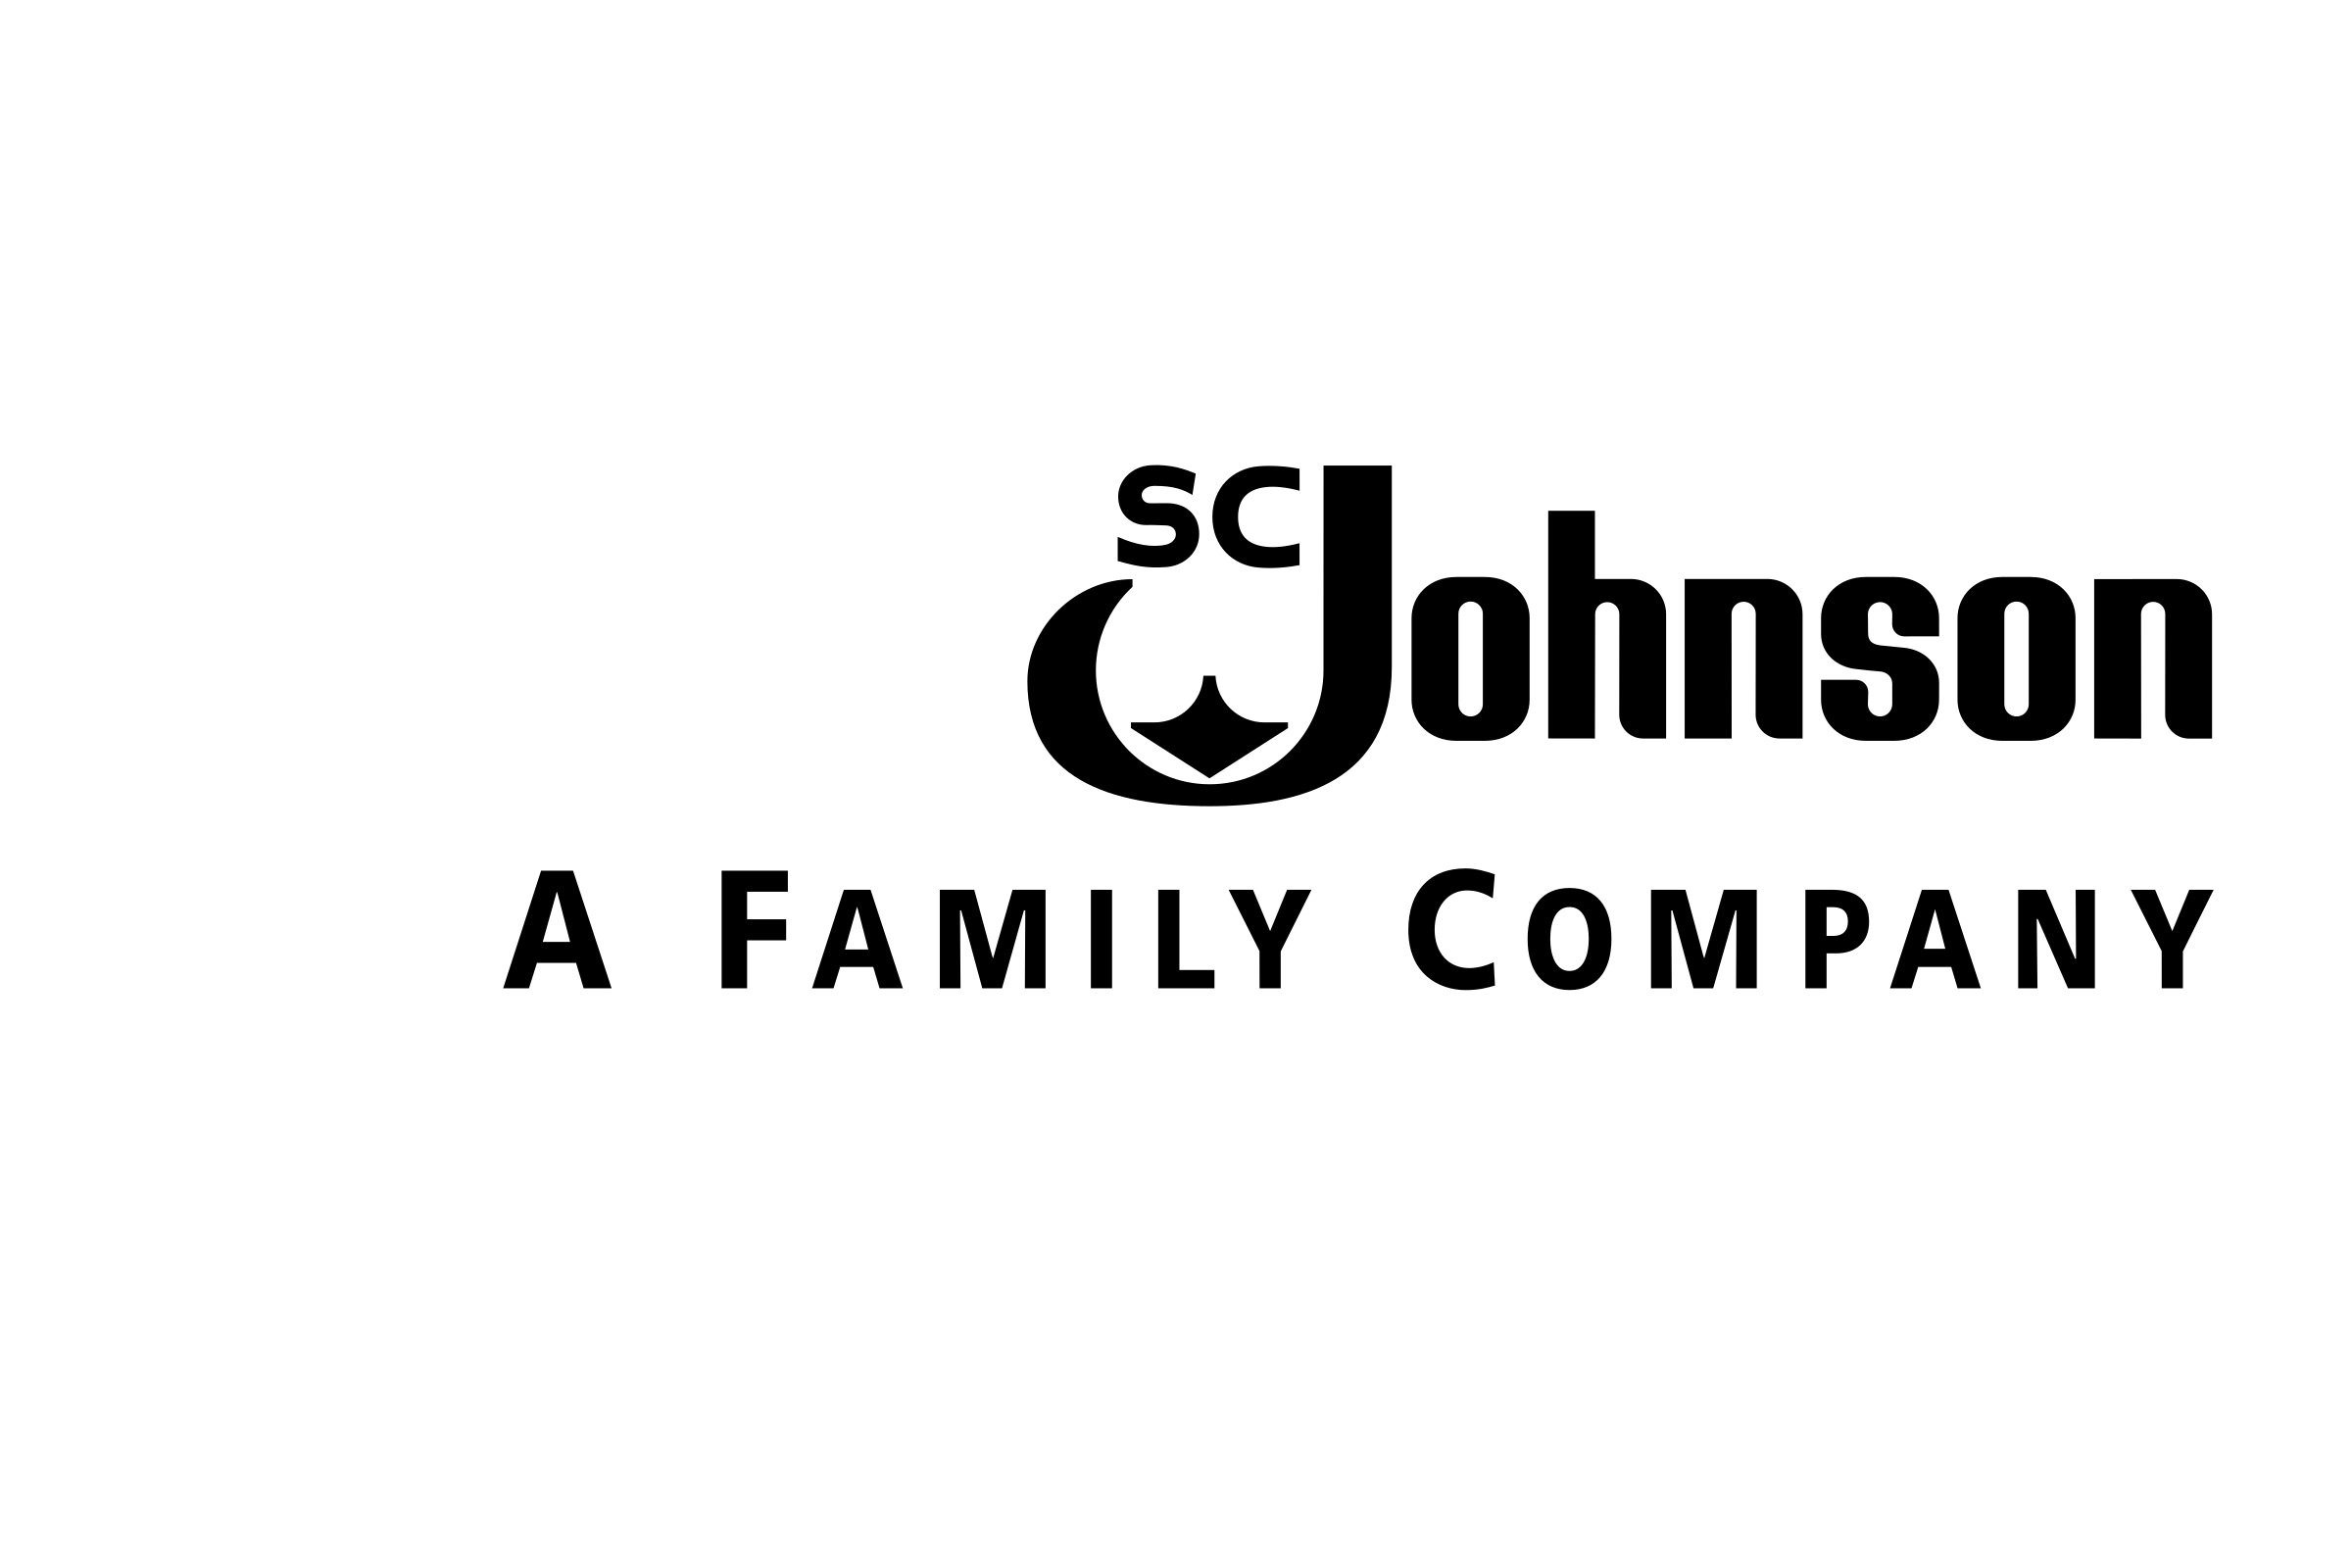 sc-johnson-logo-black-and-white.jpg